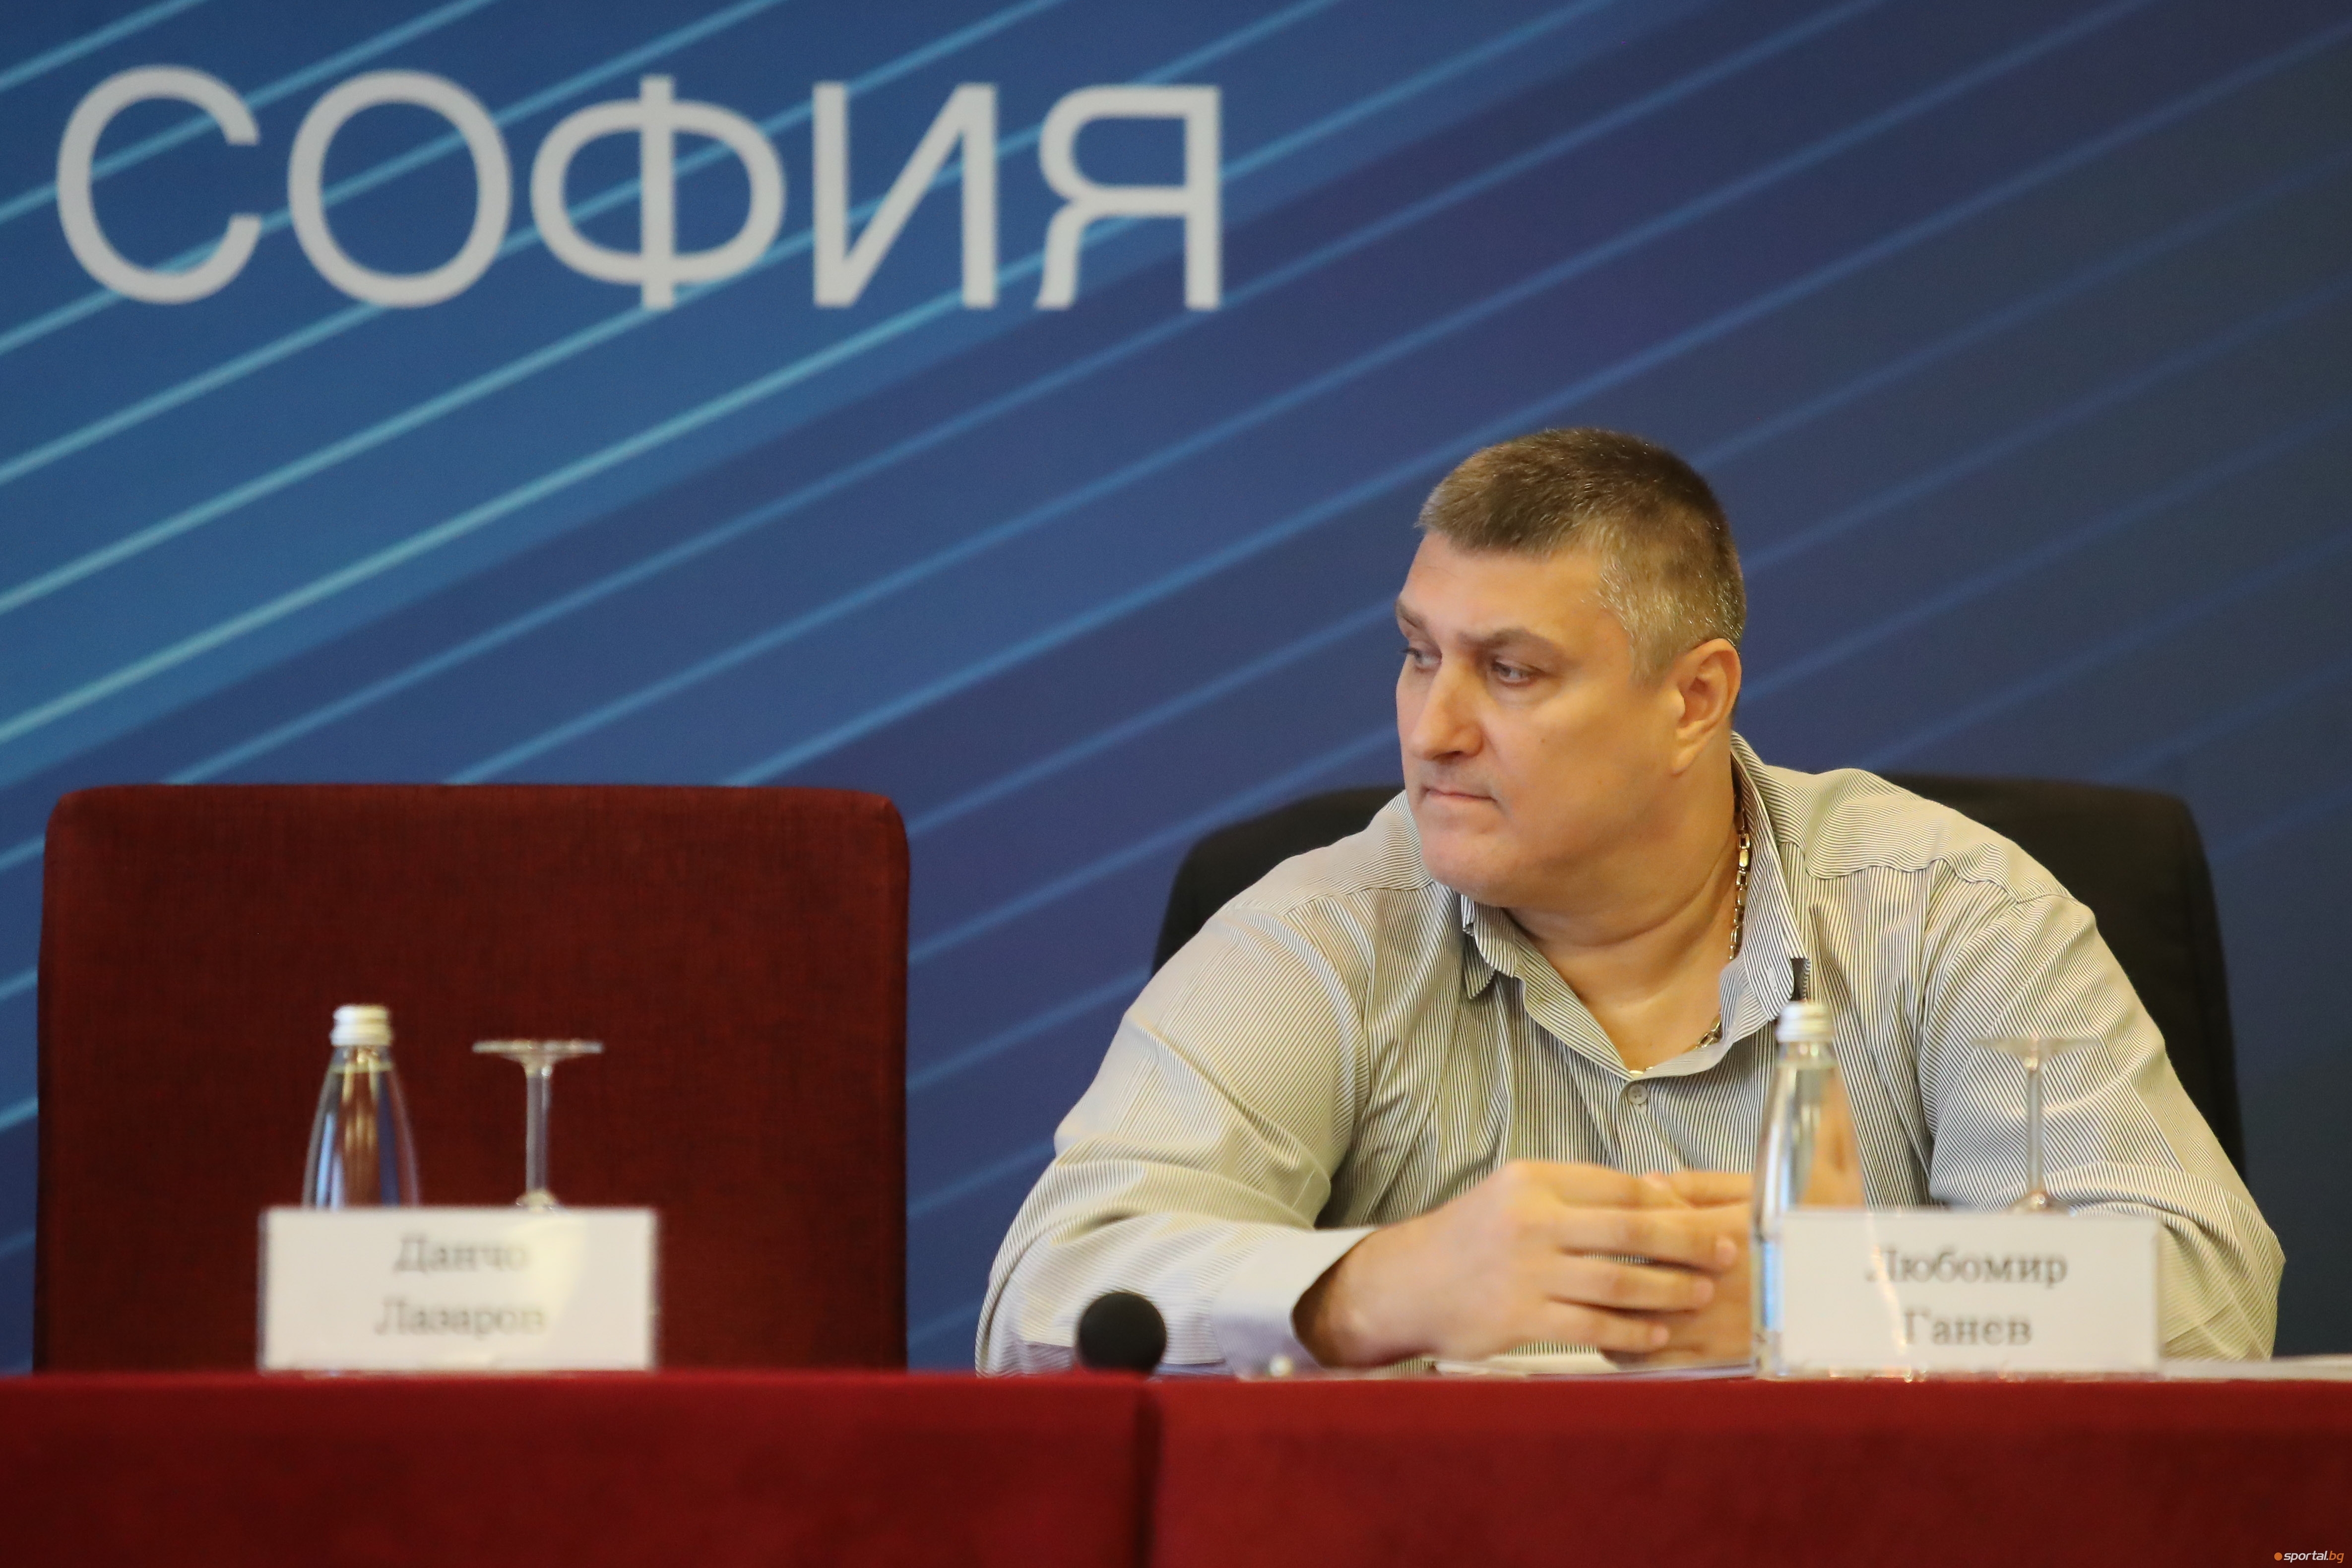 Новият президент на Българска федерация по волейбол Любомир Ганев коментира